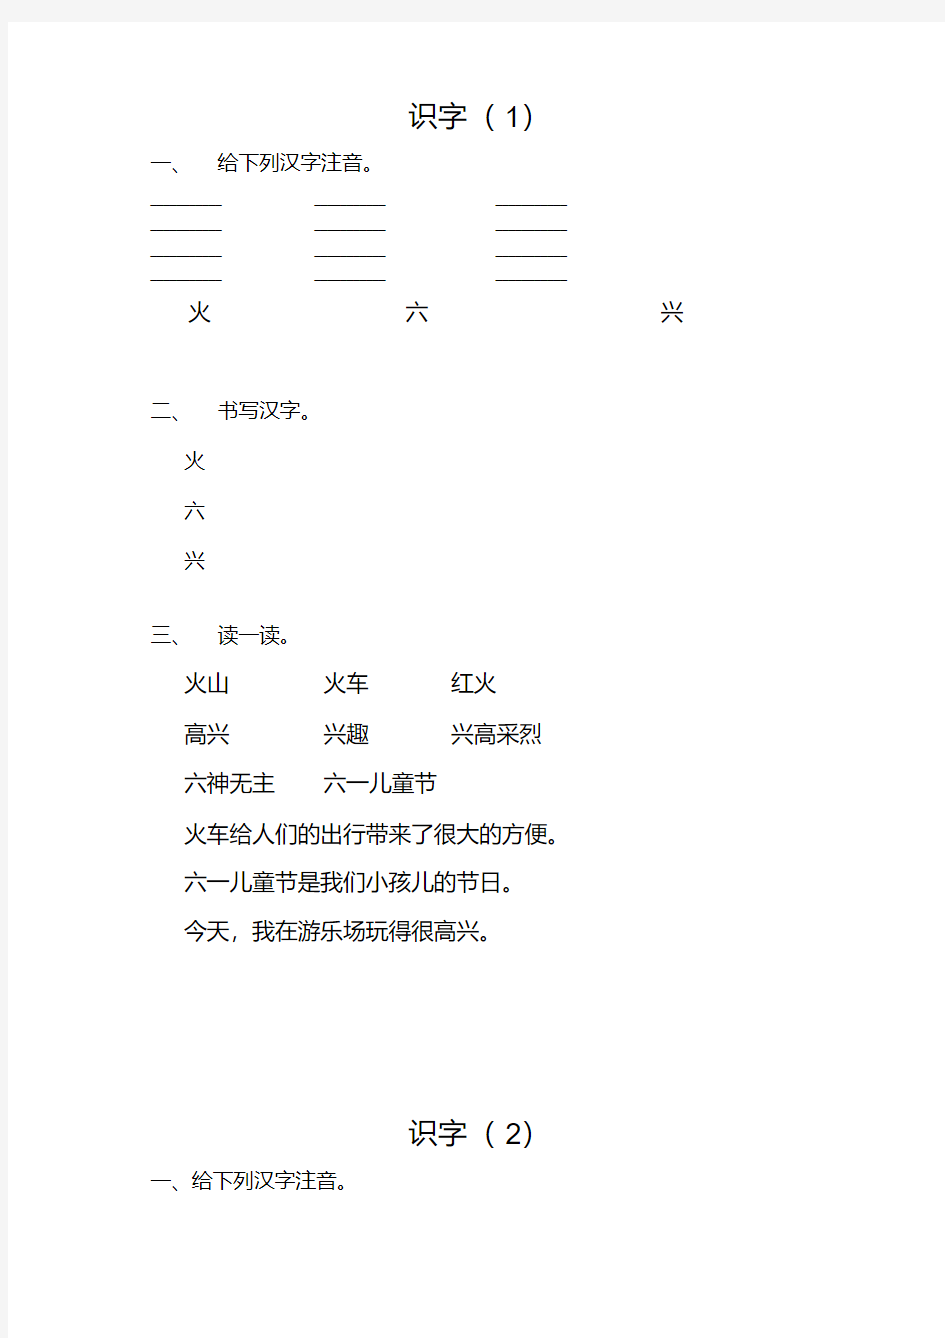 幼小衔接识字练习(20200807021246).pdf